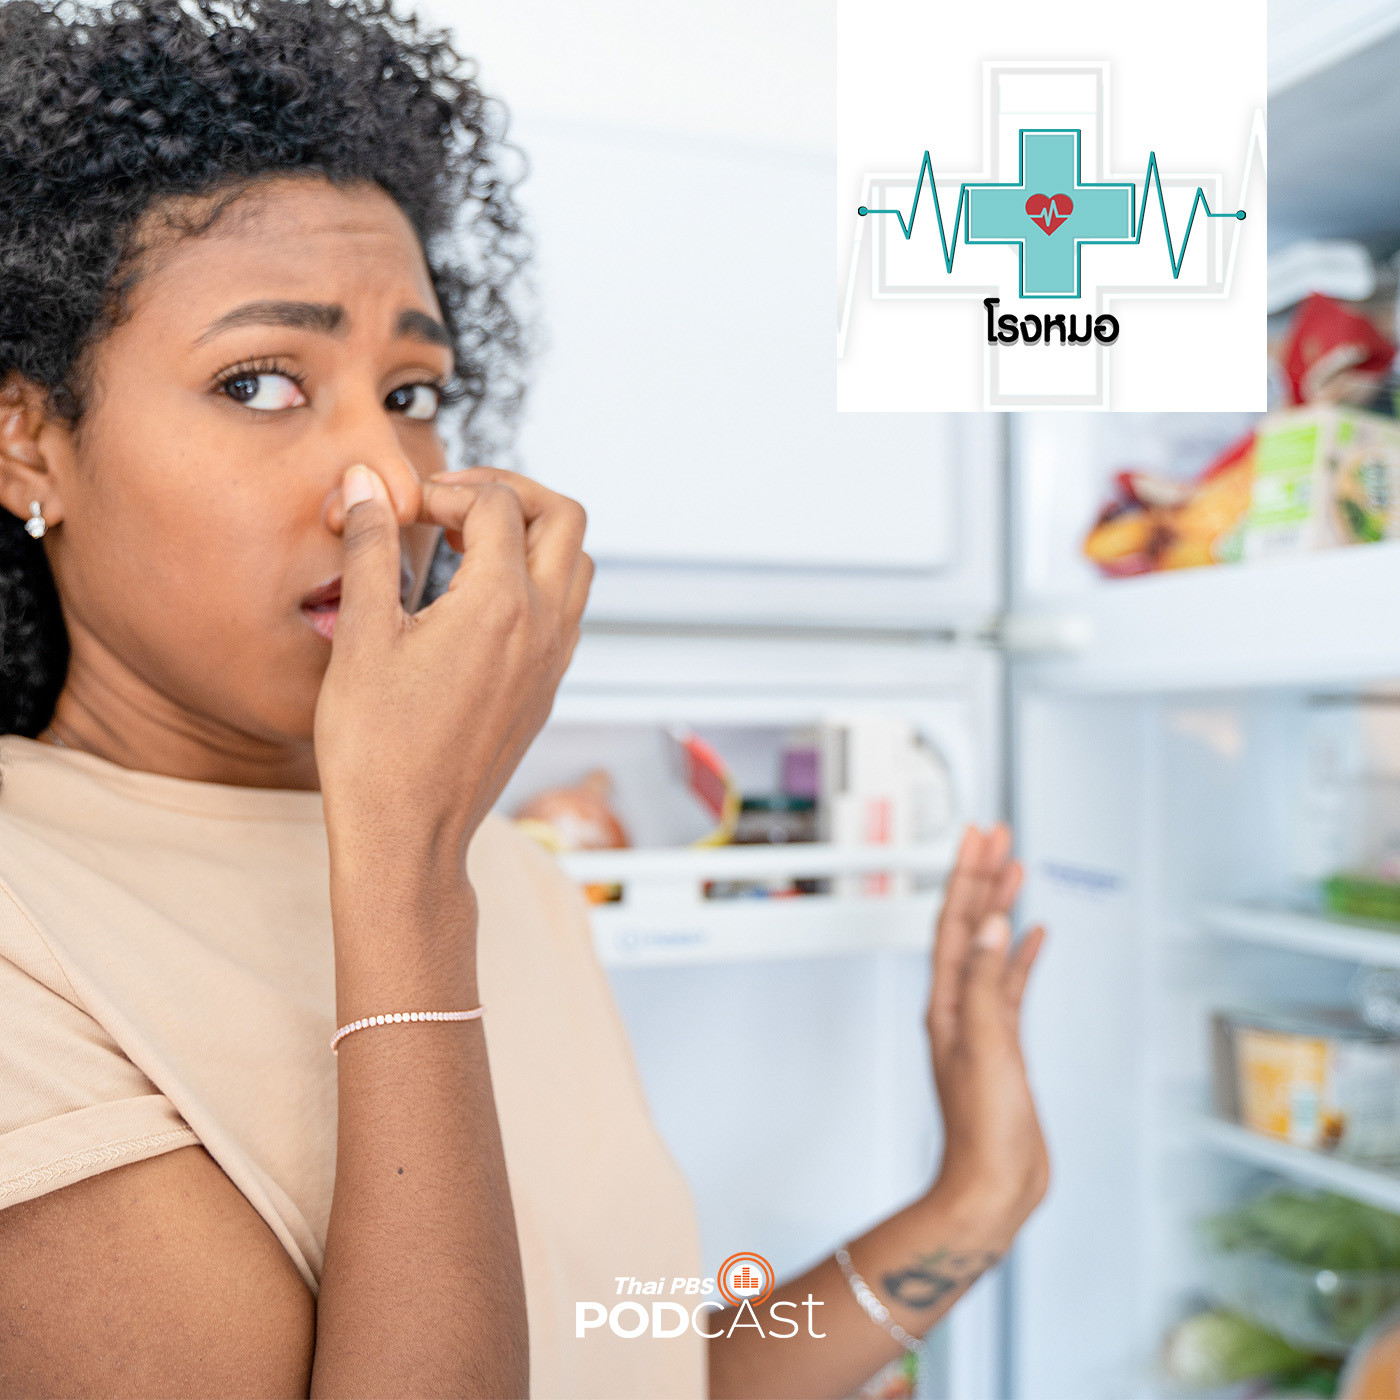 โรงหมอ EP. 771: อาหารบูดเน่าเสียในตู้เย็น อันตรายและวิธีสังเกต